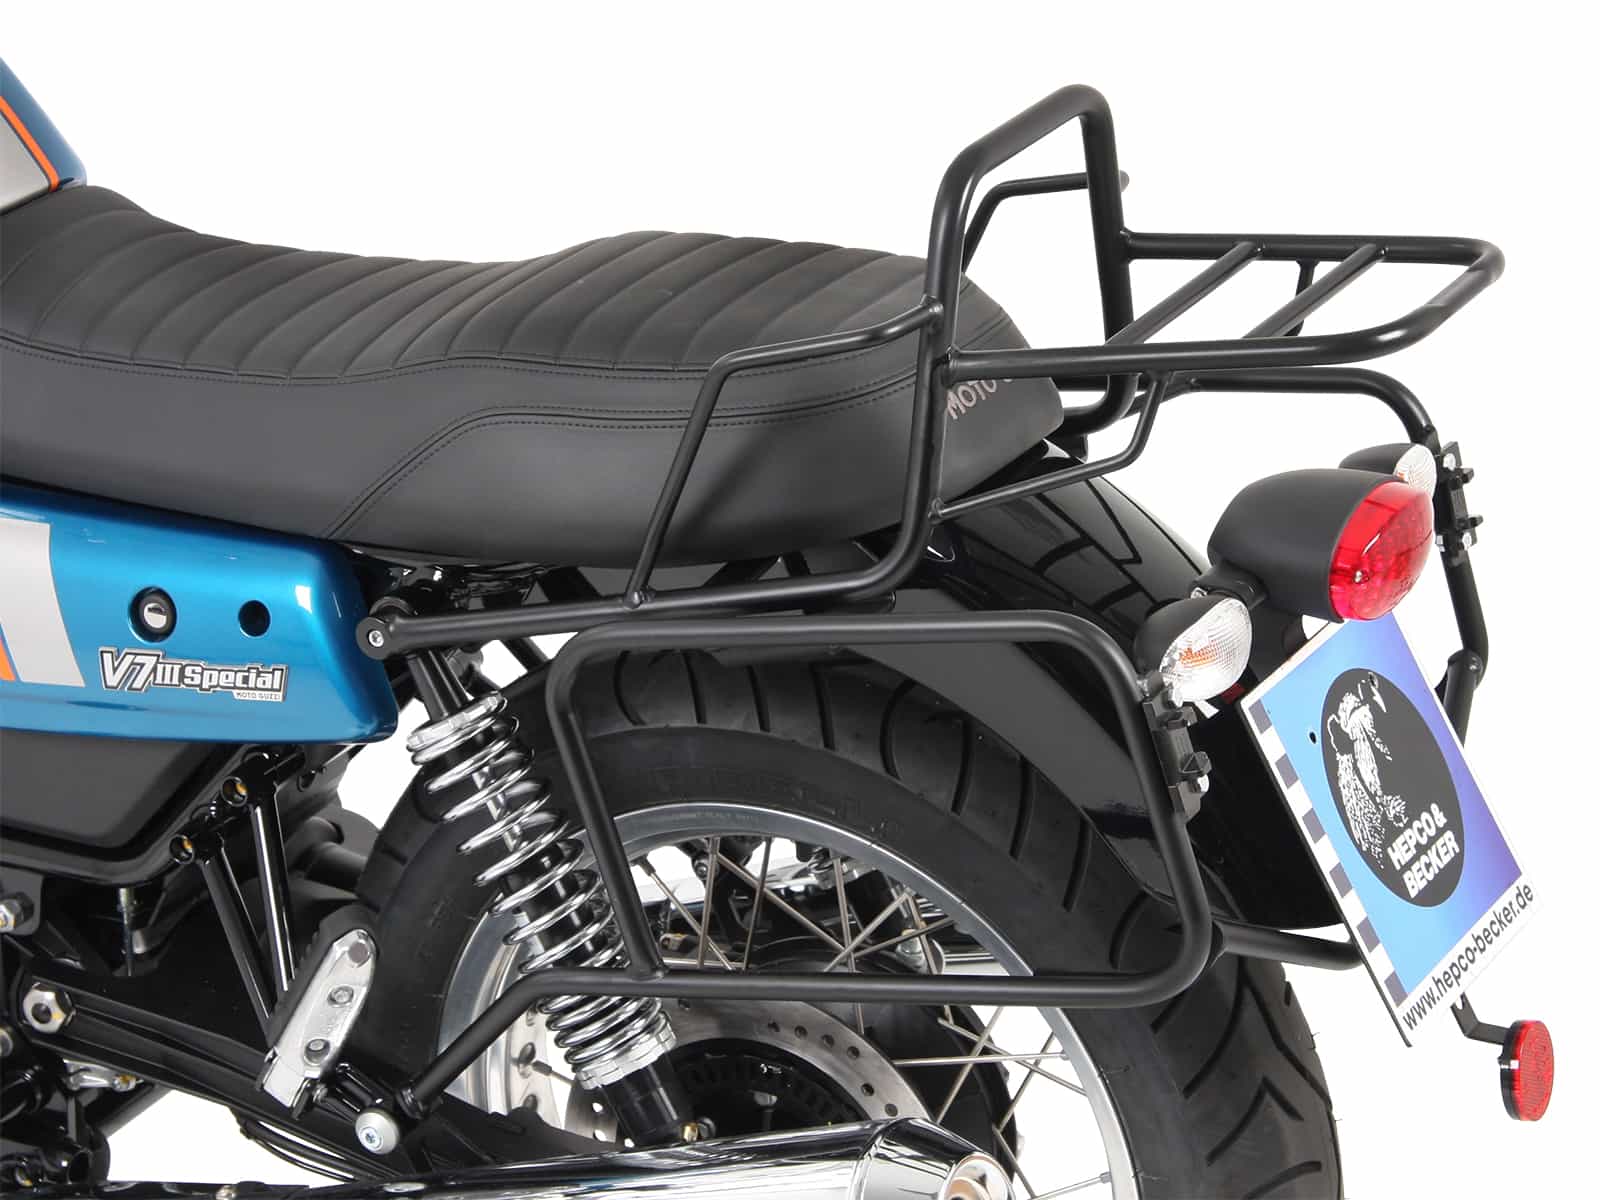 Topcase carrier tube-type chrome for Moto Guzzi V7 III (Carbon